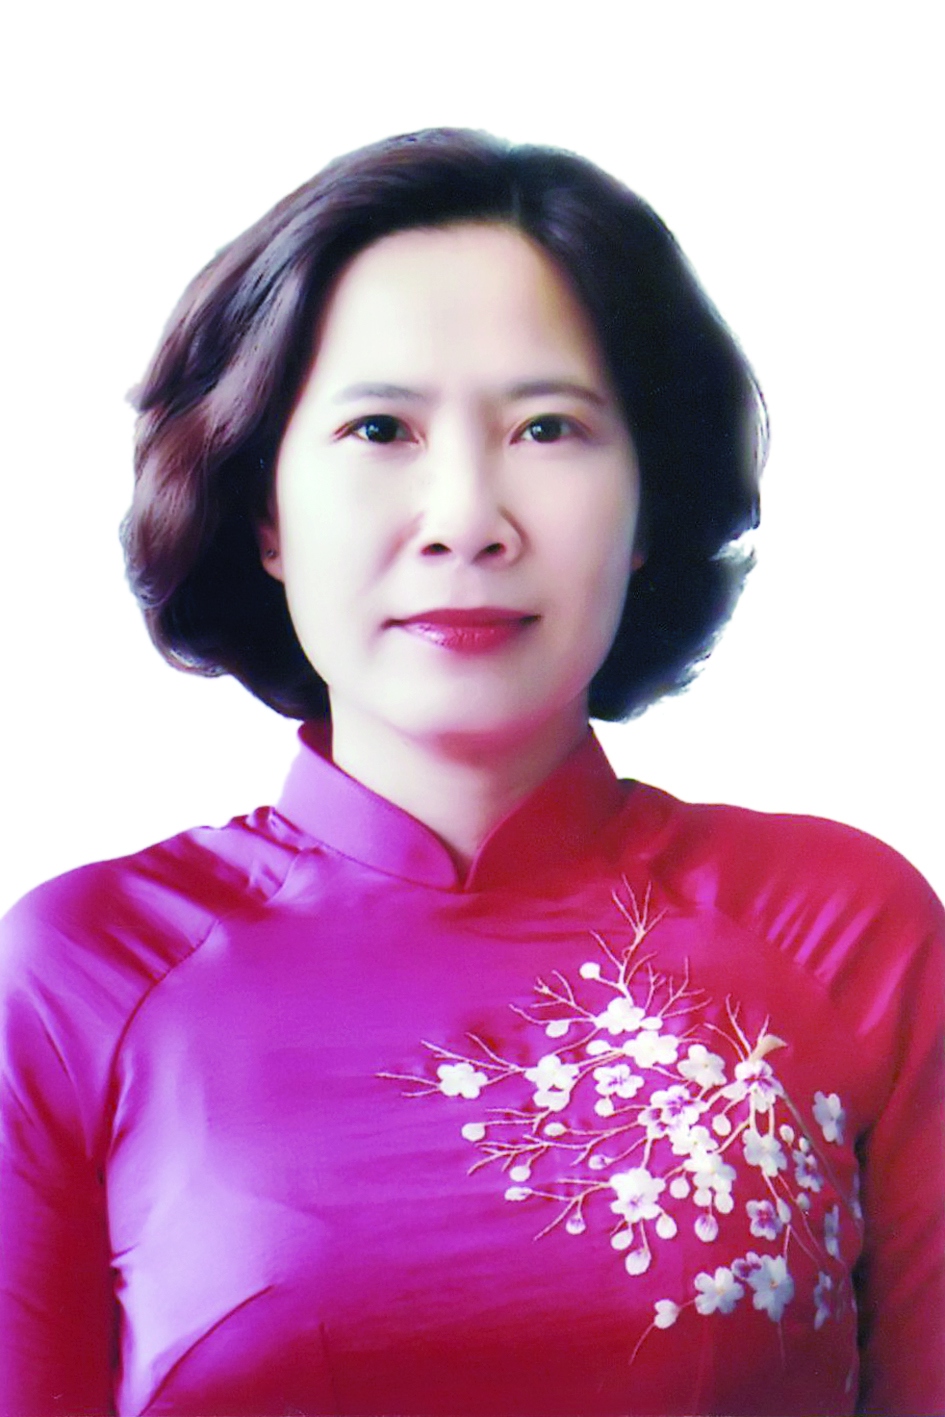 Chương trình hành động của Chủ tịch Hội Liên hiệp Phụ nữ TP Hà Nội Lê Kim Anh, ứng cử viên đại biểu HĐND TP Hà Nội nhiệm kỳ 2021 - 2026 - Ảnh 1